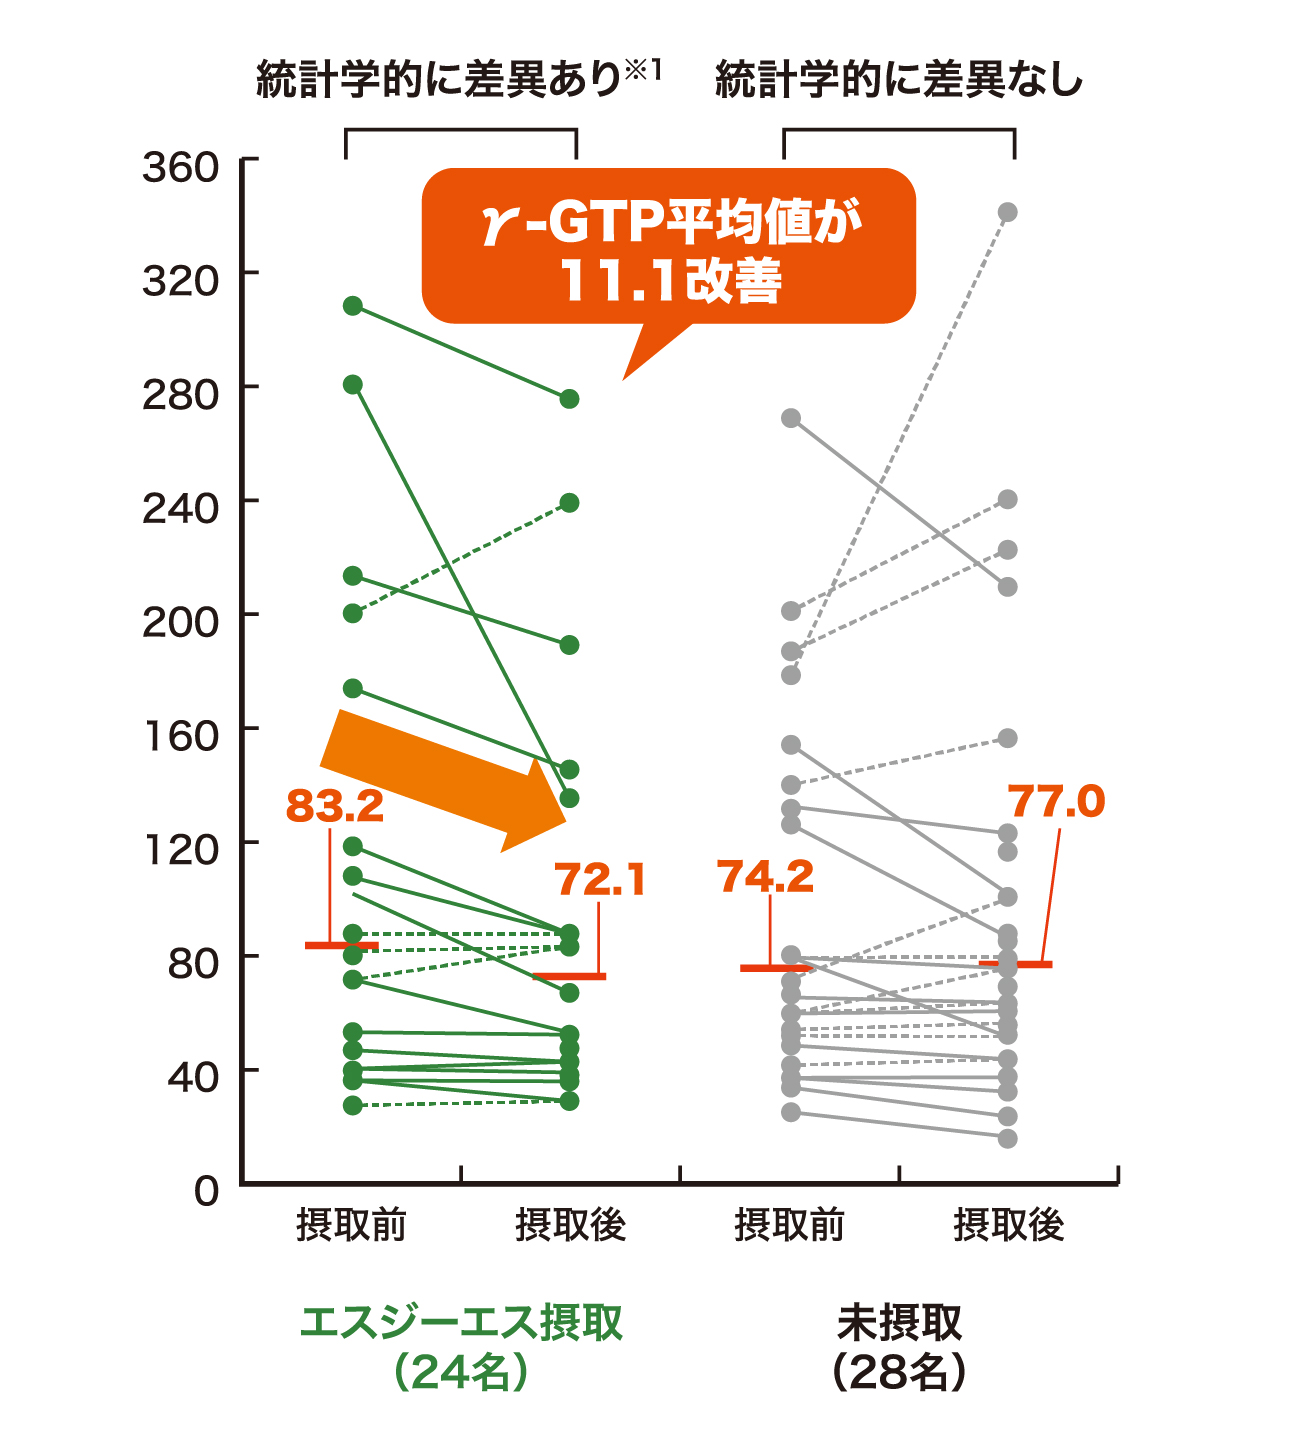 γ-GTP平均値が11.1改善